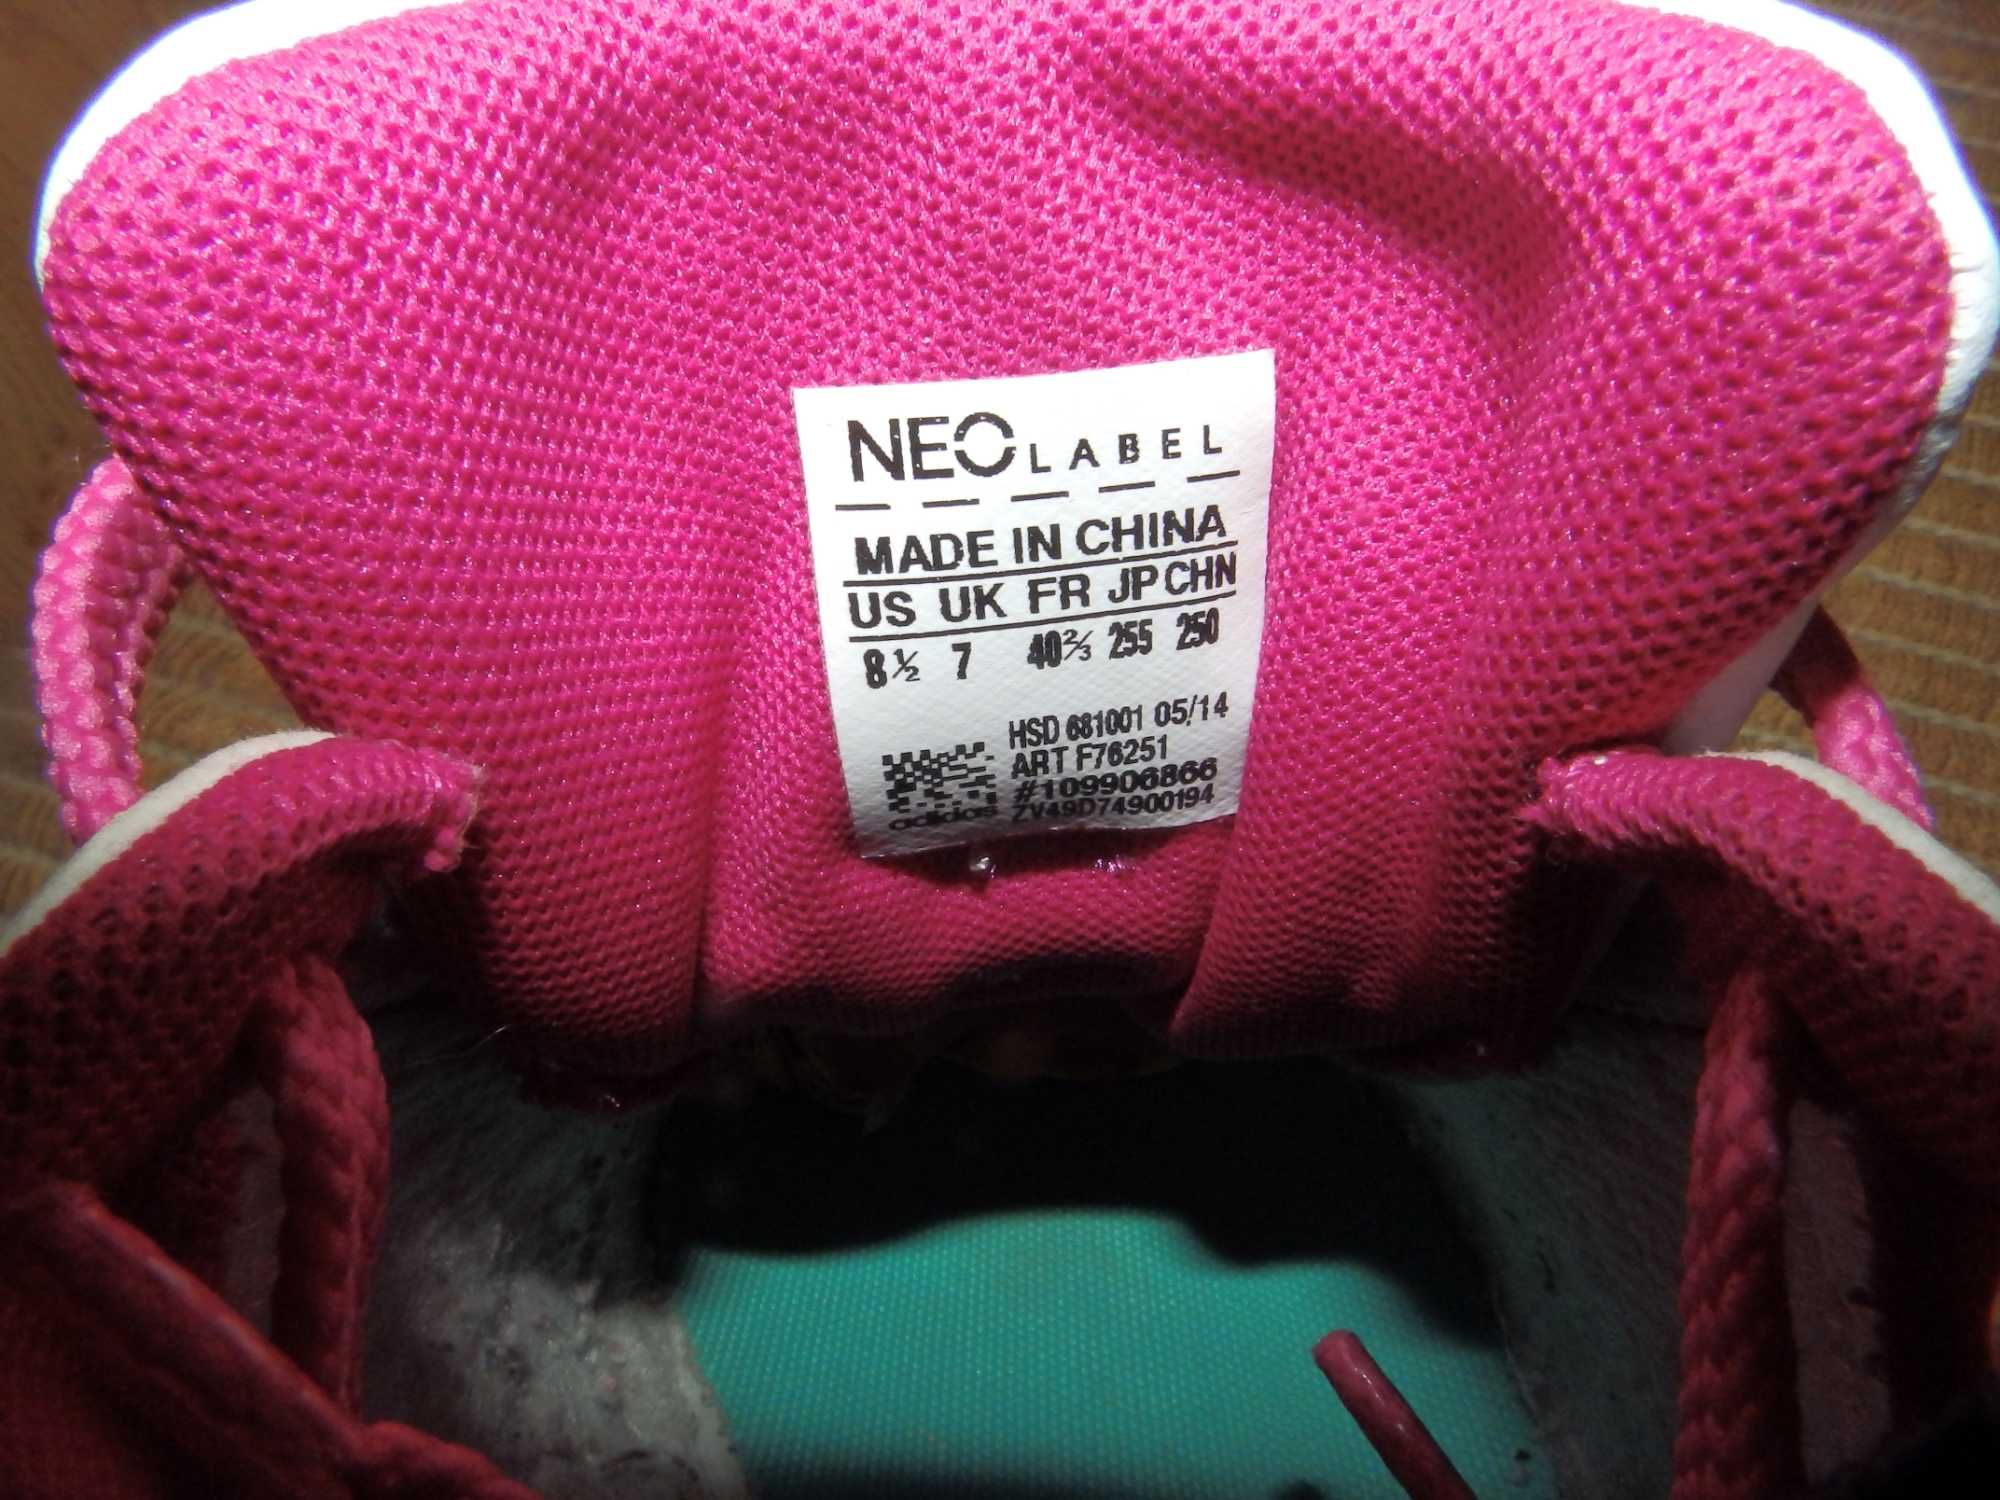 Кроссовки Adidas NEO label HSD 681001